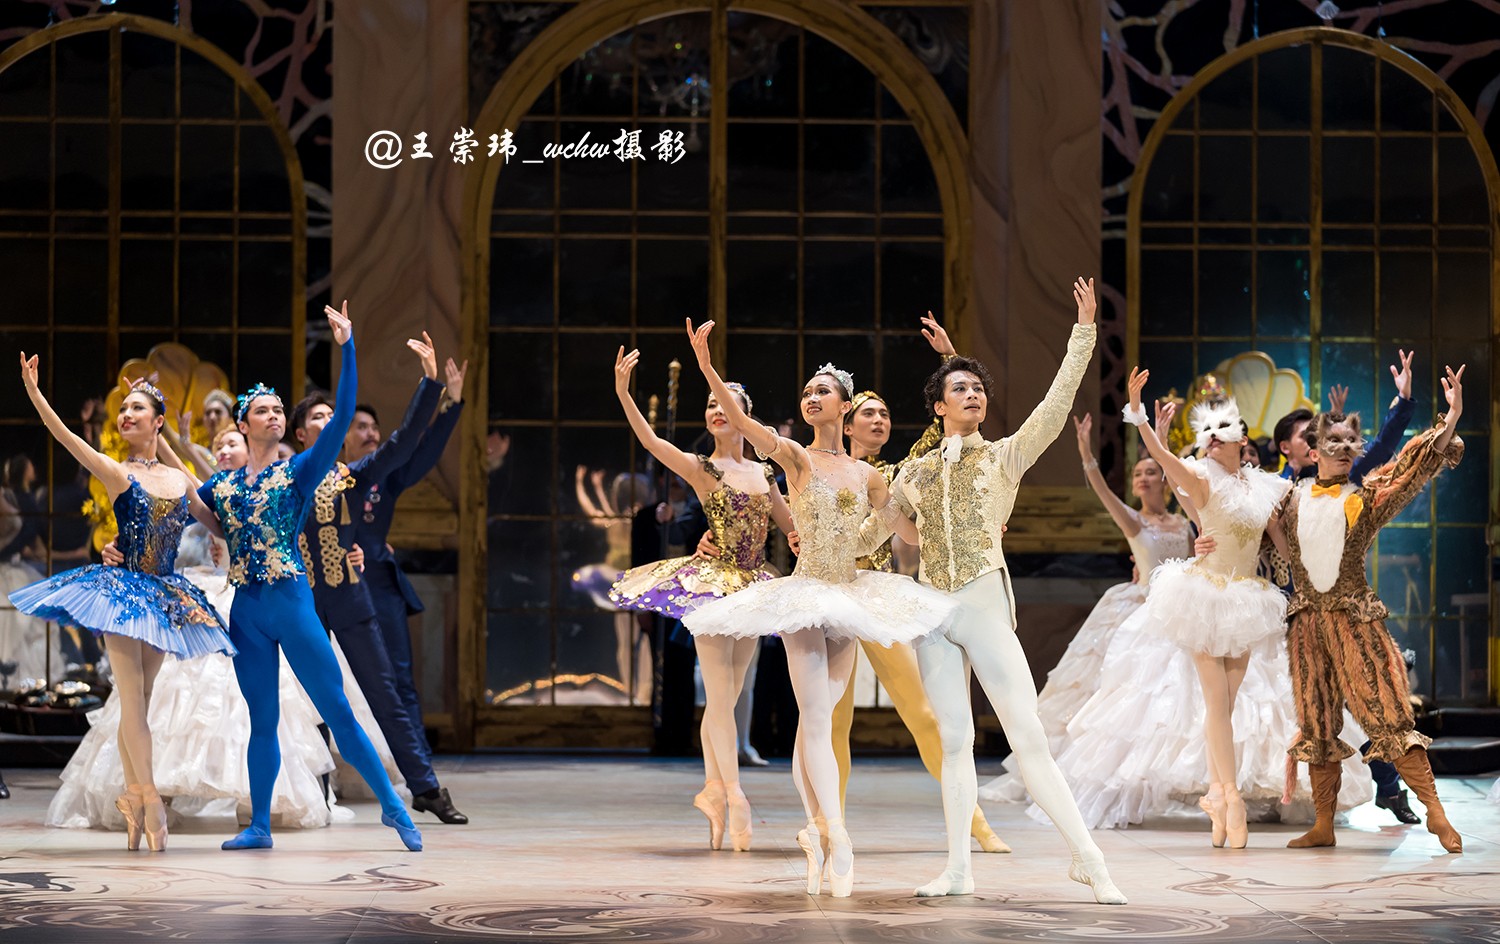 乌克兰儿童芭蕾舞剧院 童话芭蕾《睡美人》「临沂」_门票预订【有票】_价格_时间_场馆